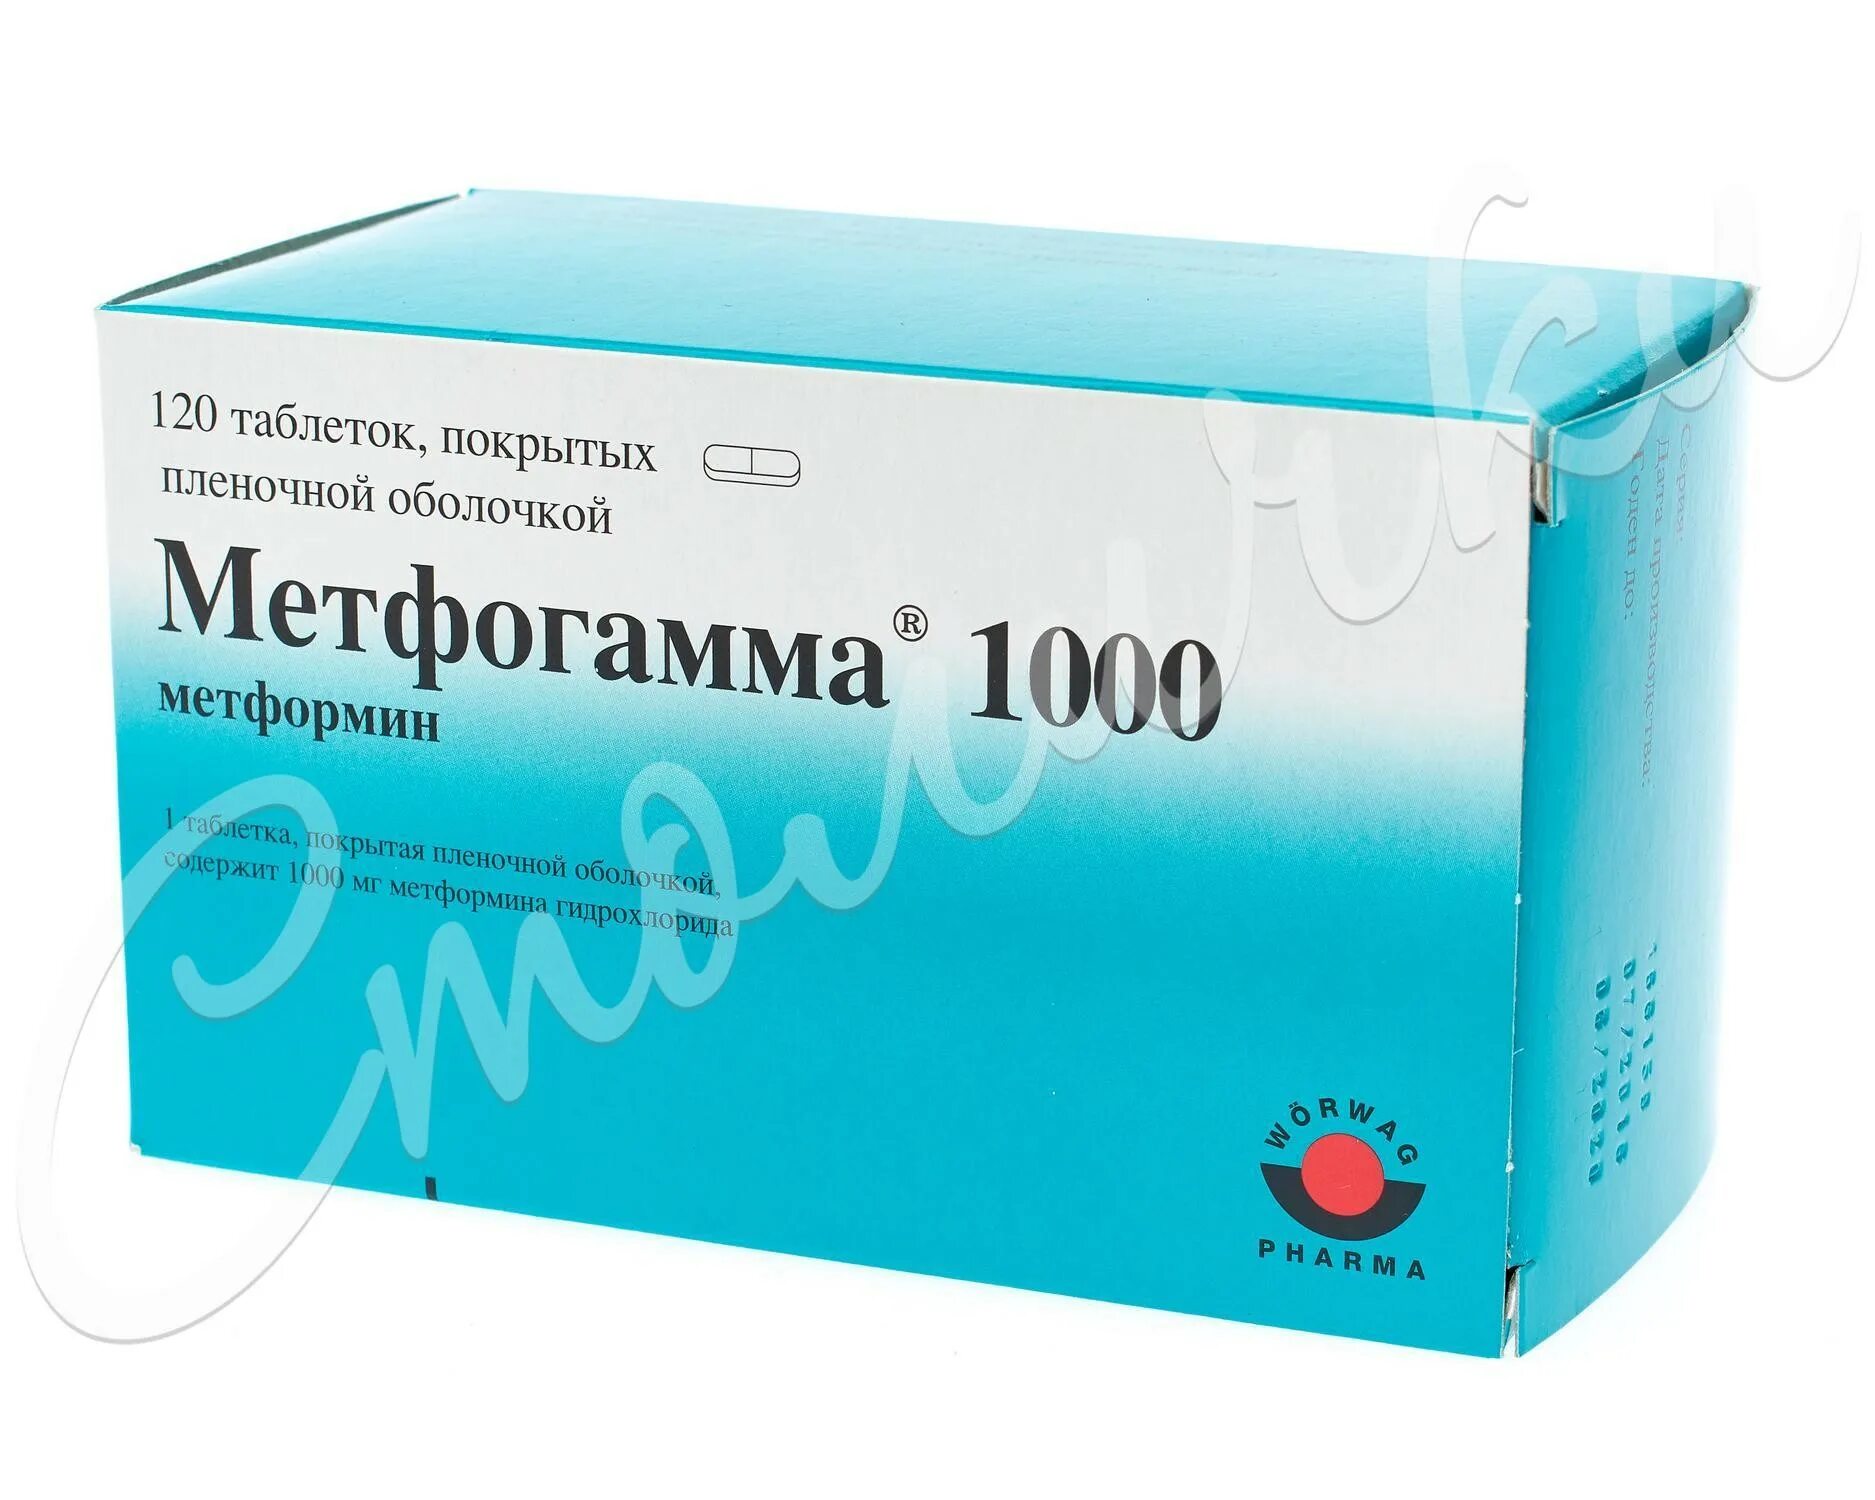 Мерифатин 1000 мг. Мерифатин метформин 1000мг. Мерифатин 100. Метфогамма 1000.